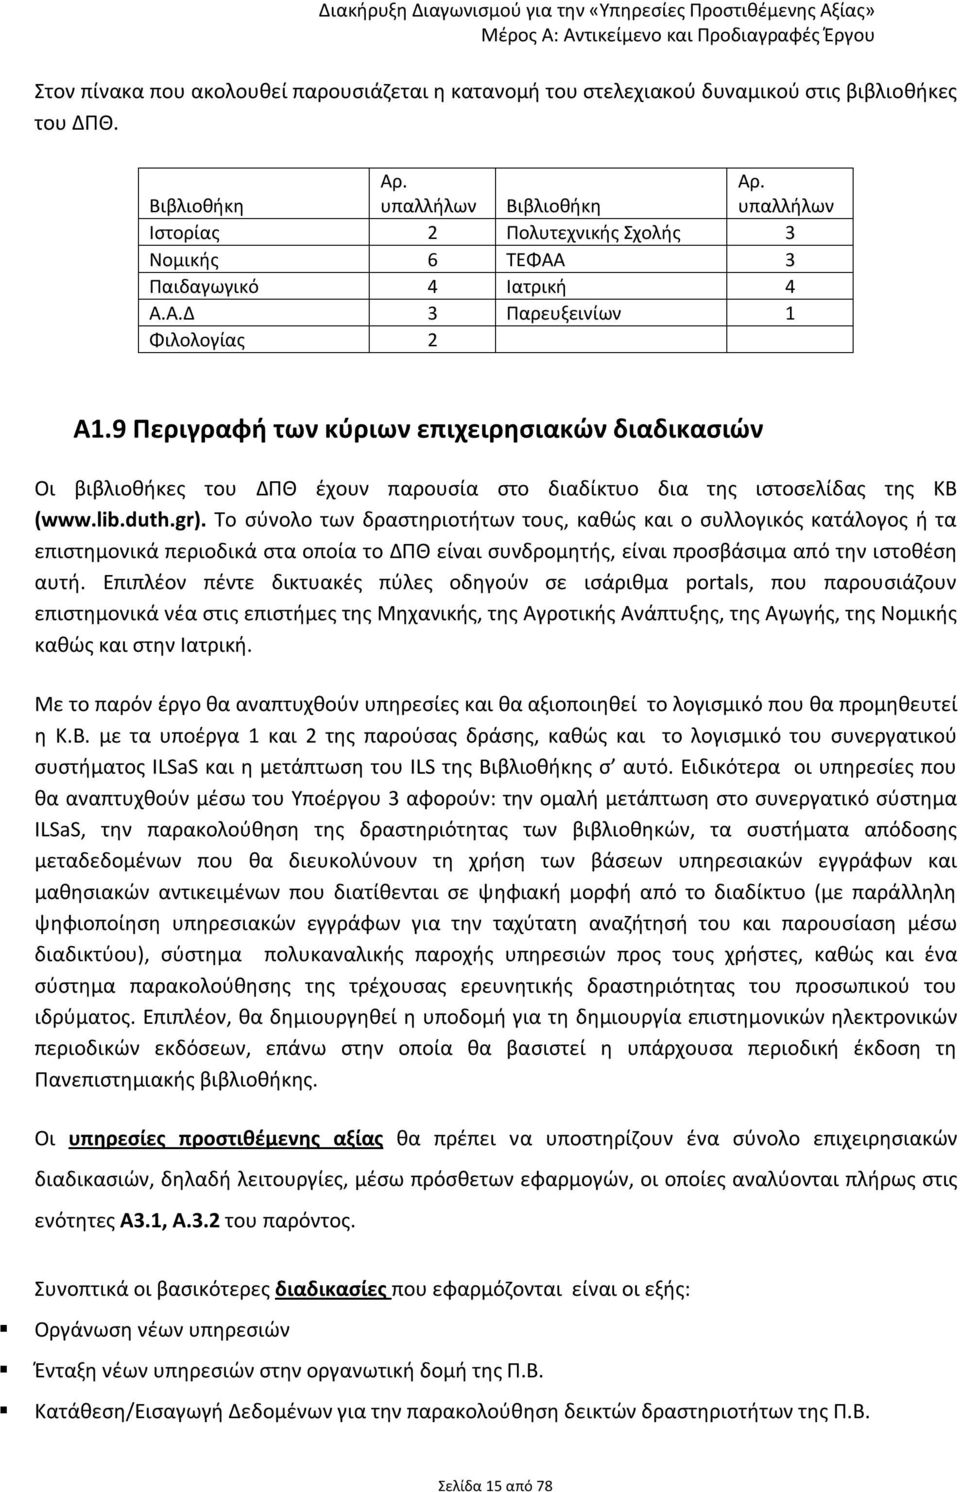 9 Περιγραφή των κύριων επιχειρησιακών διαδικασιών Οι βιβλιοθήκες του ΔΠΘ έχουν παρουσία στο διαδίκτυο δια της ιστοσελίδας της ΚΒ (www.lib.duth.gr).